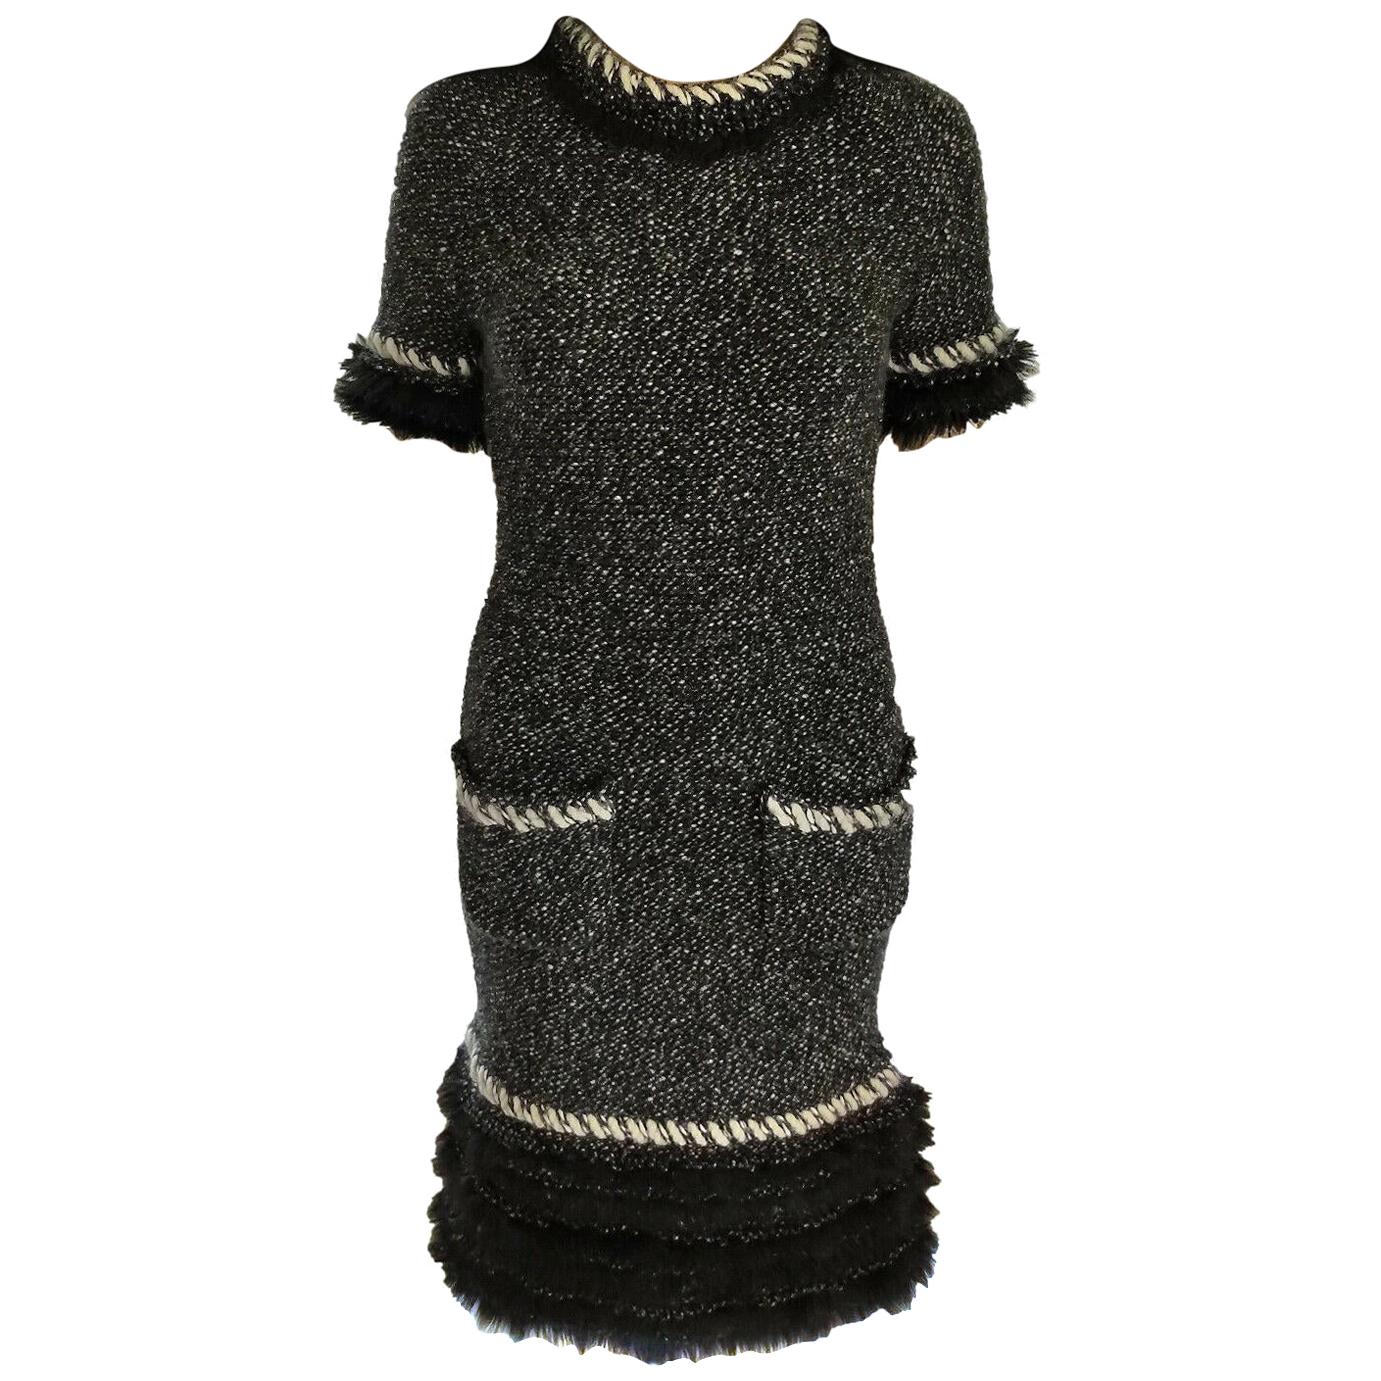 Chanel Fall 2010 Black & White Tweed Cashmere Fur Fringe Dress FR 38/ US 4 6